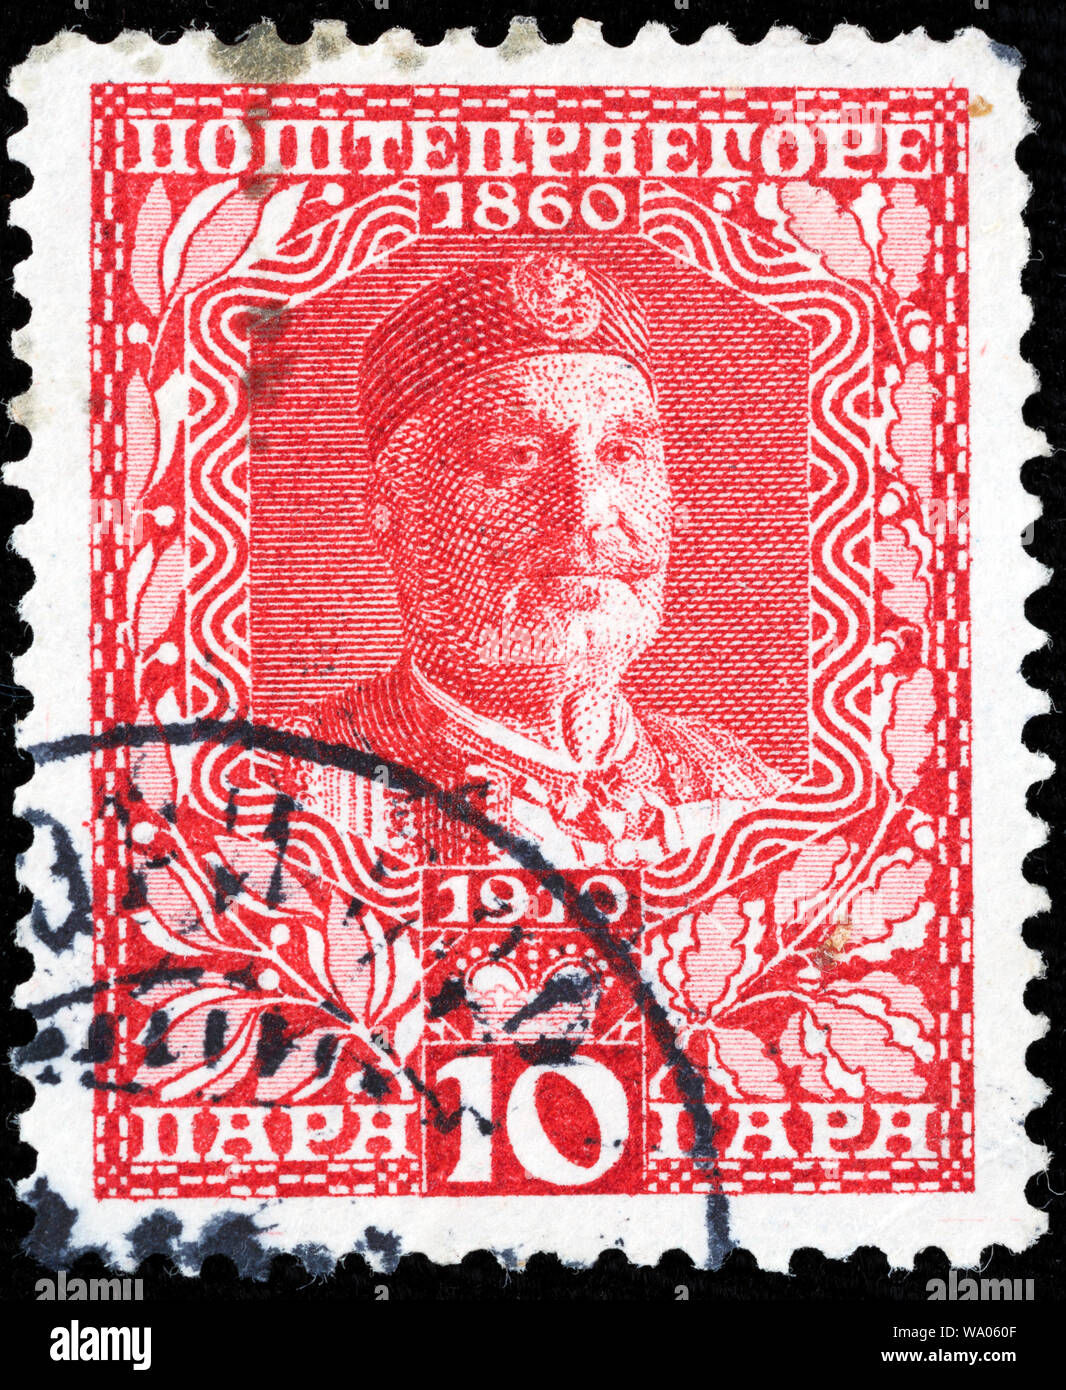 Nicholas I, King of Montenegro (1860-1918), postage stamp, Montenegro, 1913 Stock Photo